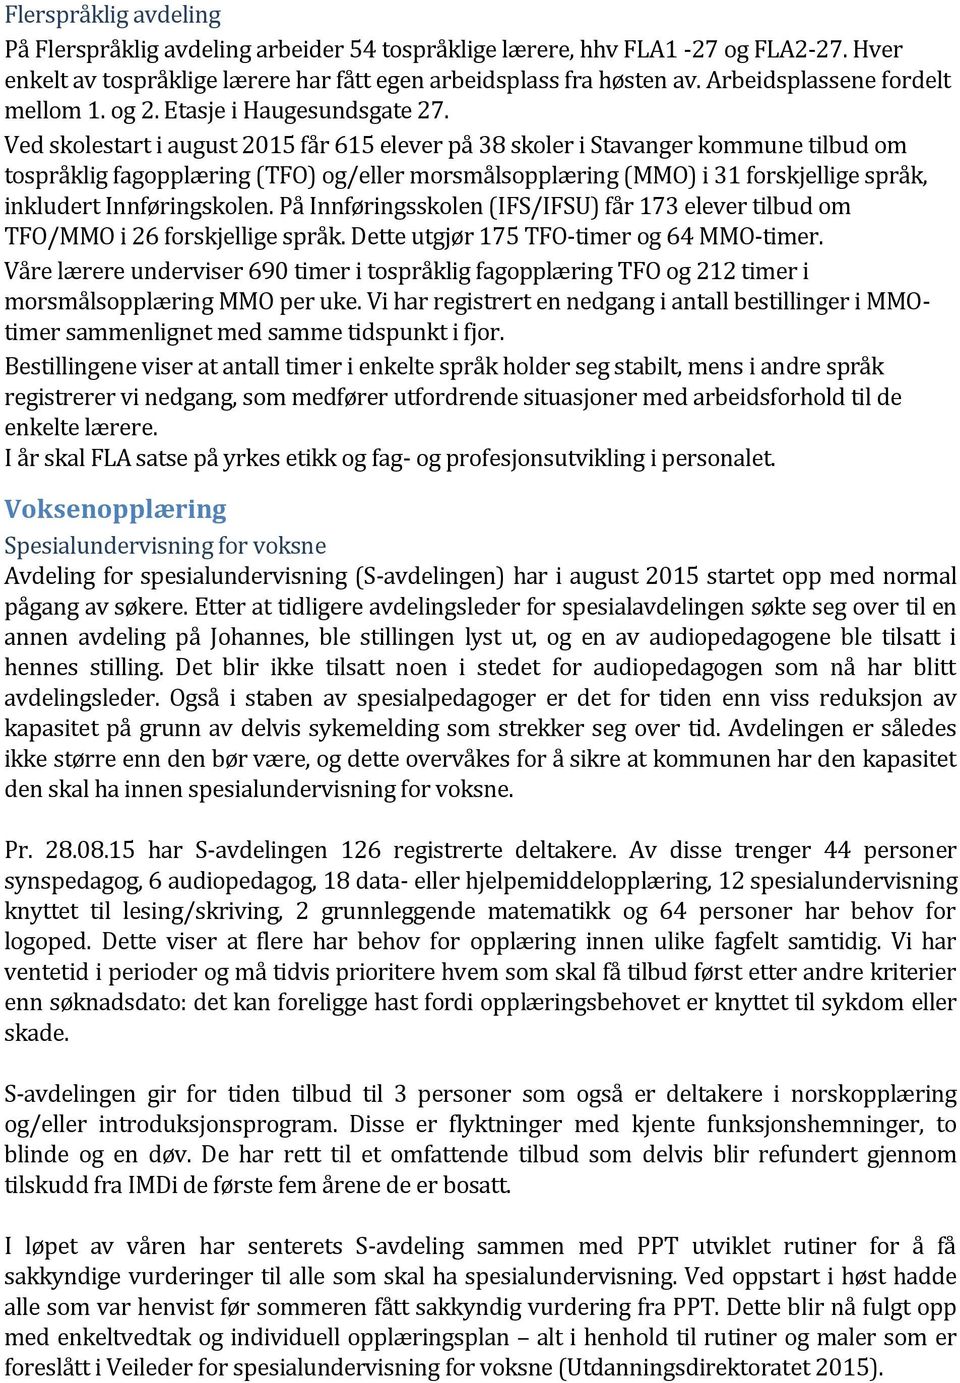 Ved skolestart i august 2015 får 615 elever på 38 skoler i Stavanger kommune tilbud om tospråklig fagopplæring (TFO) og/eller morsmålsopplæring (MMO) i 31 forskjellige språk, inkludert